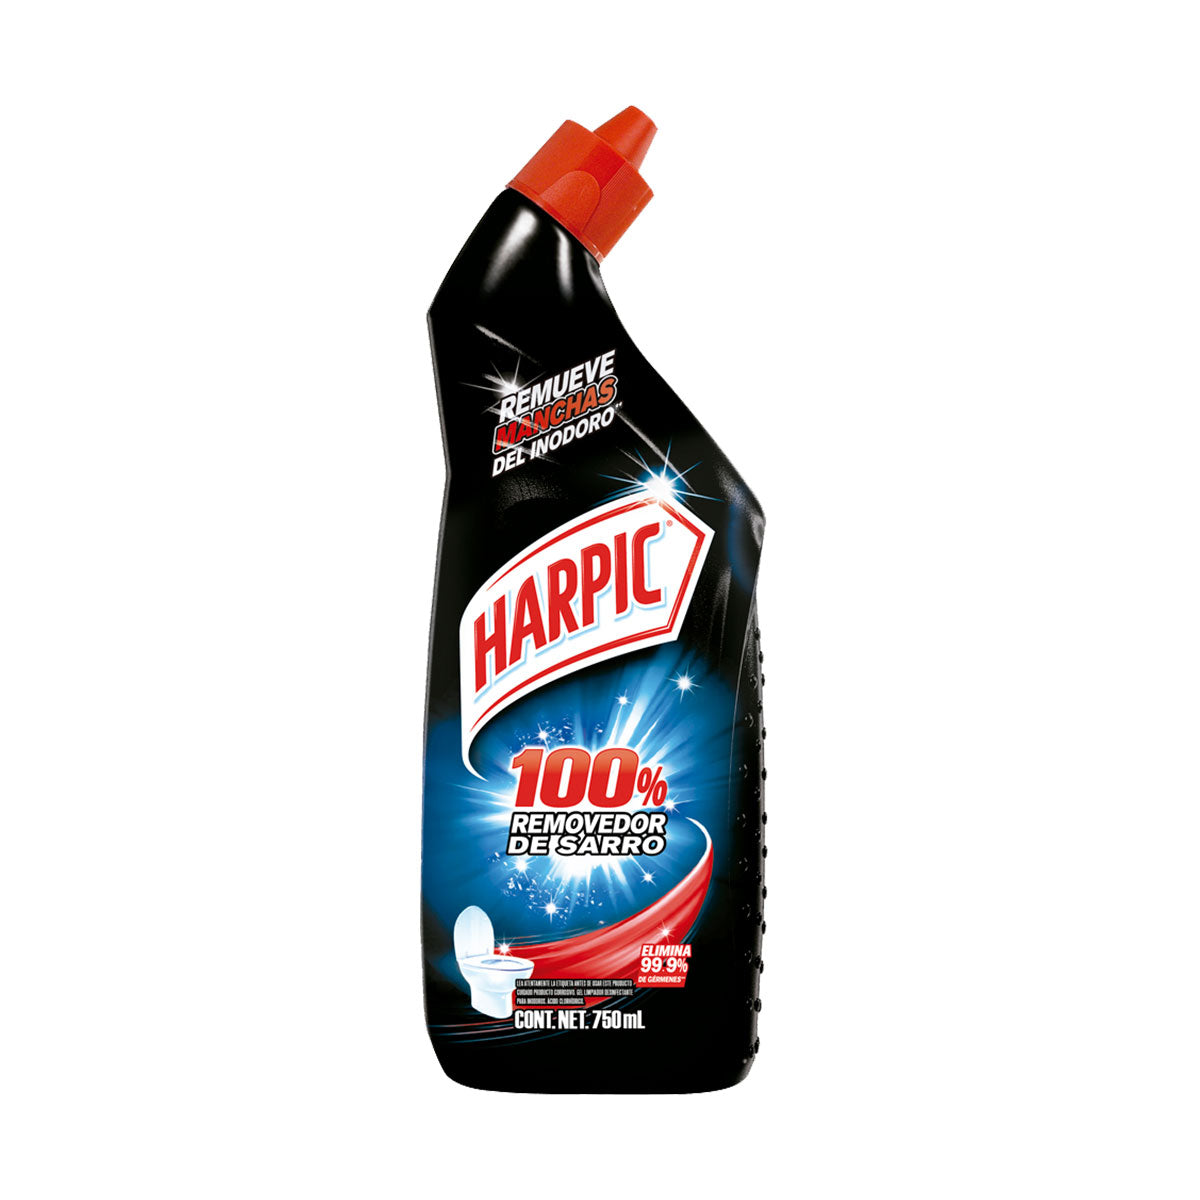 Limpiador Desinfectante para Inodoros Harpic 100% Removedor de Sarro 750 ml